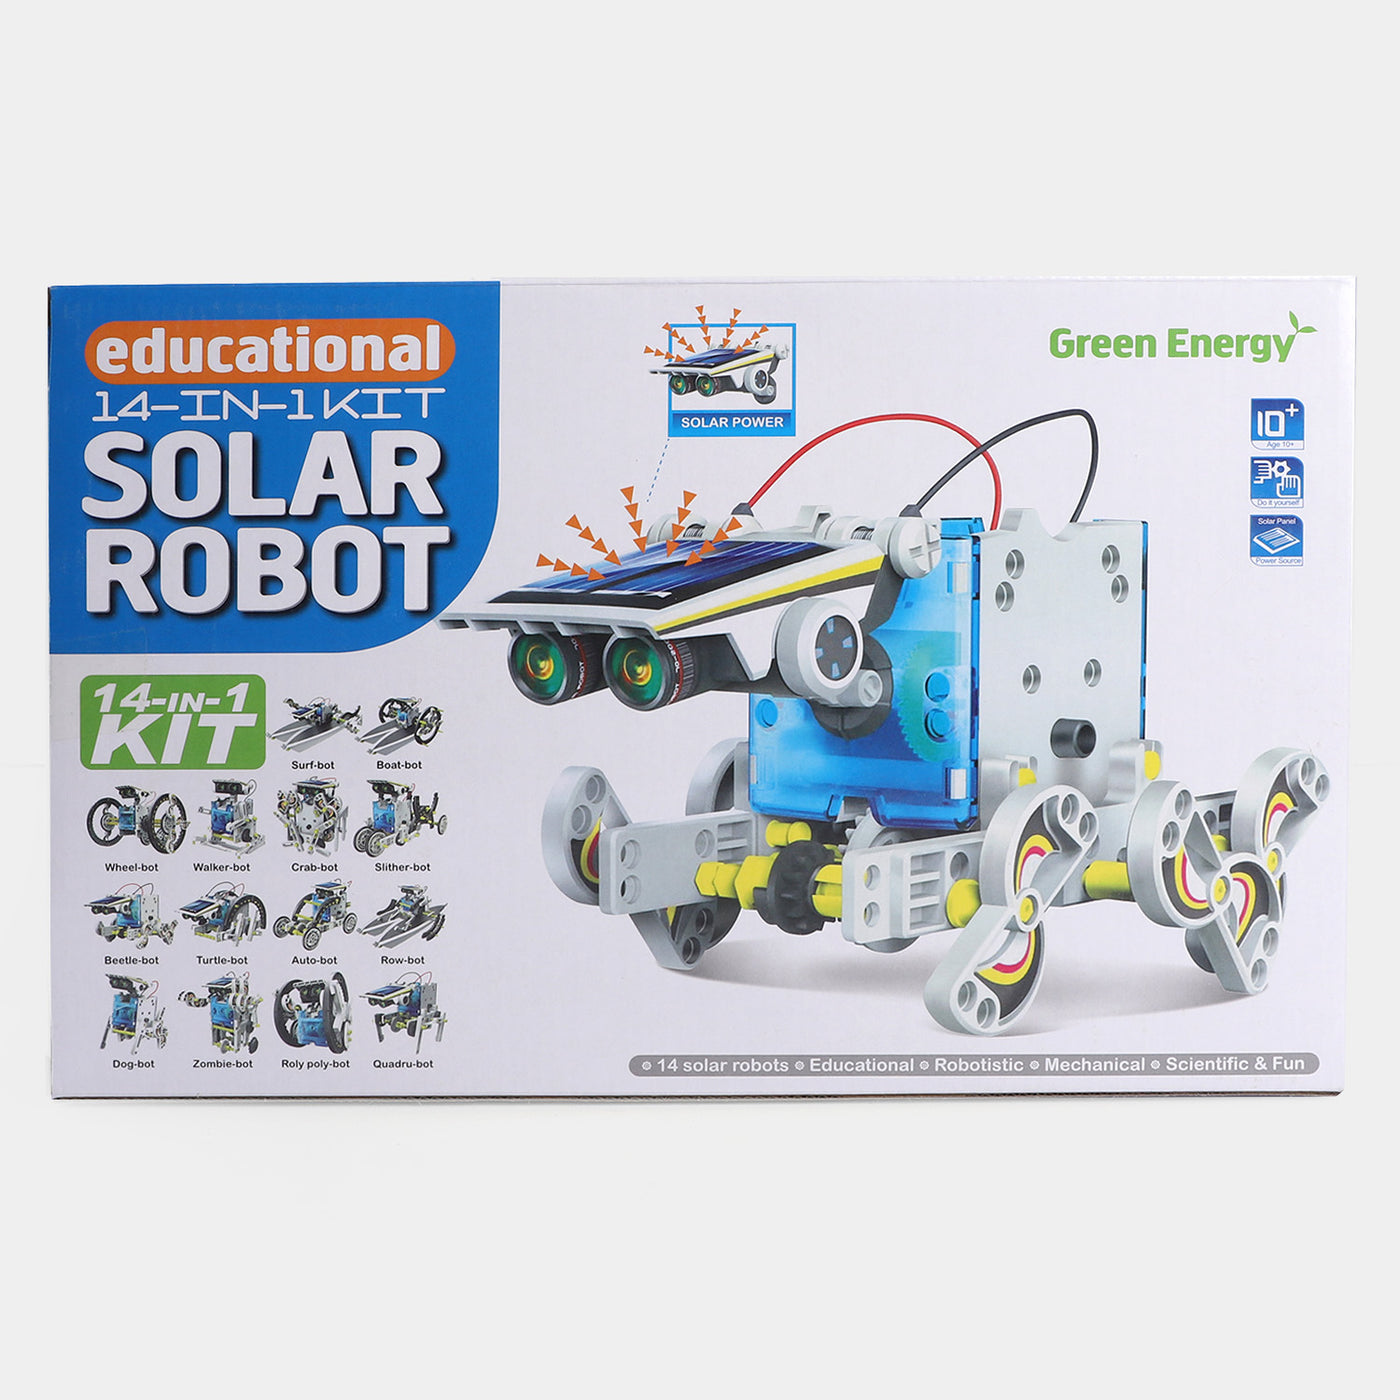 Educational Solar Robot For Kids